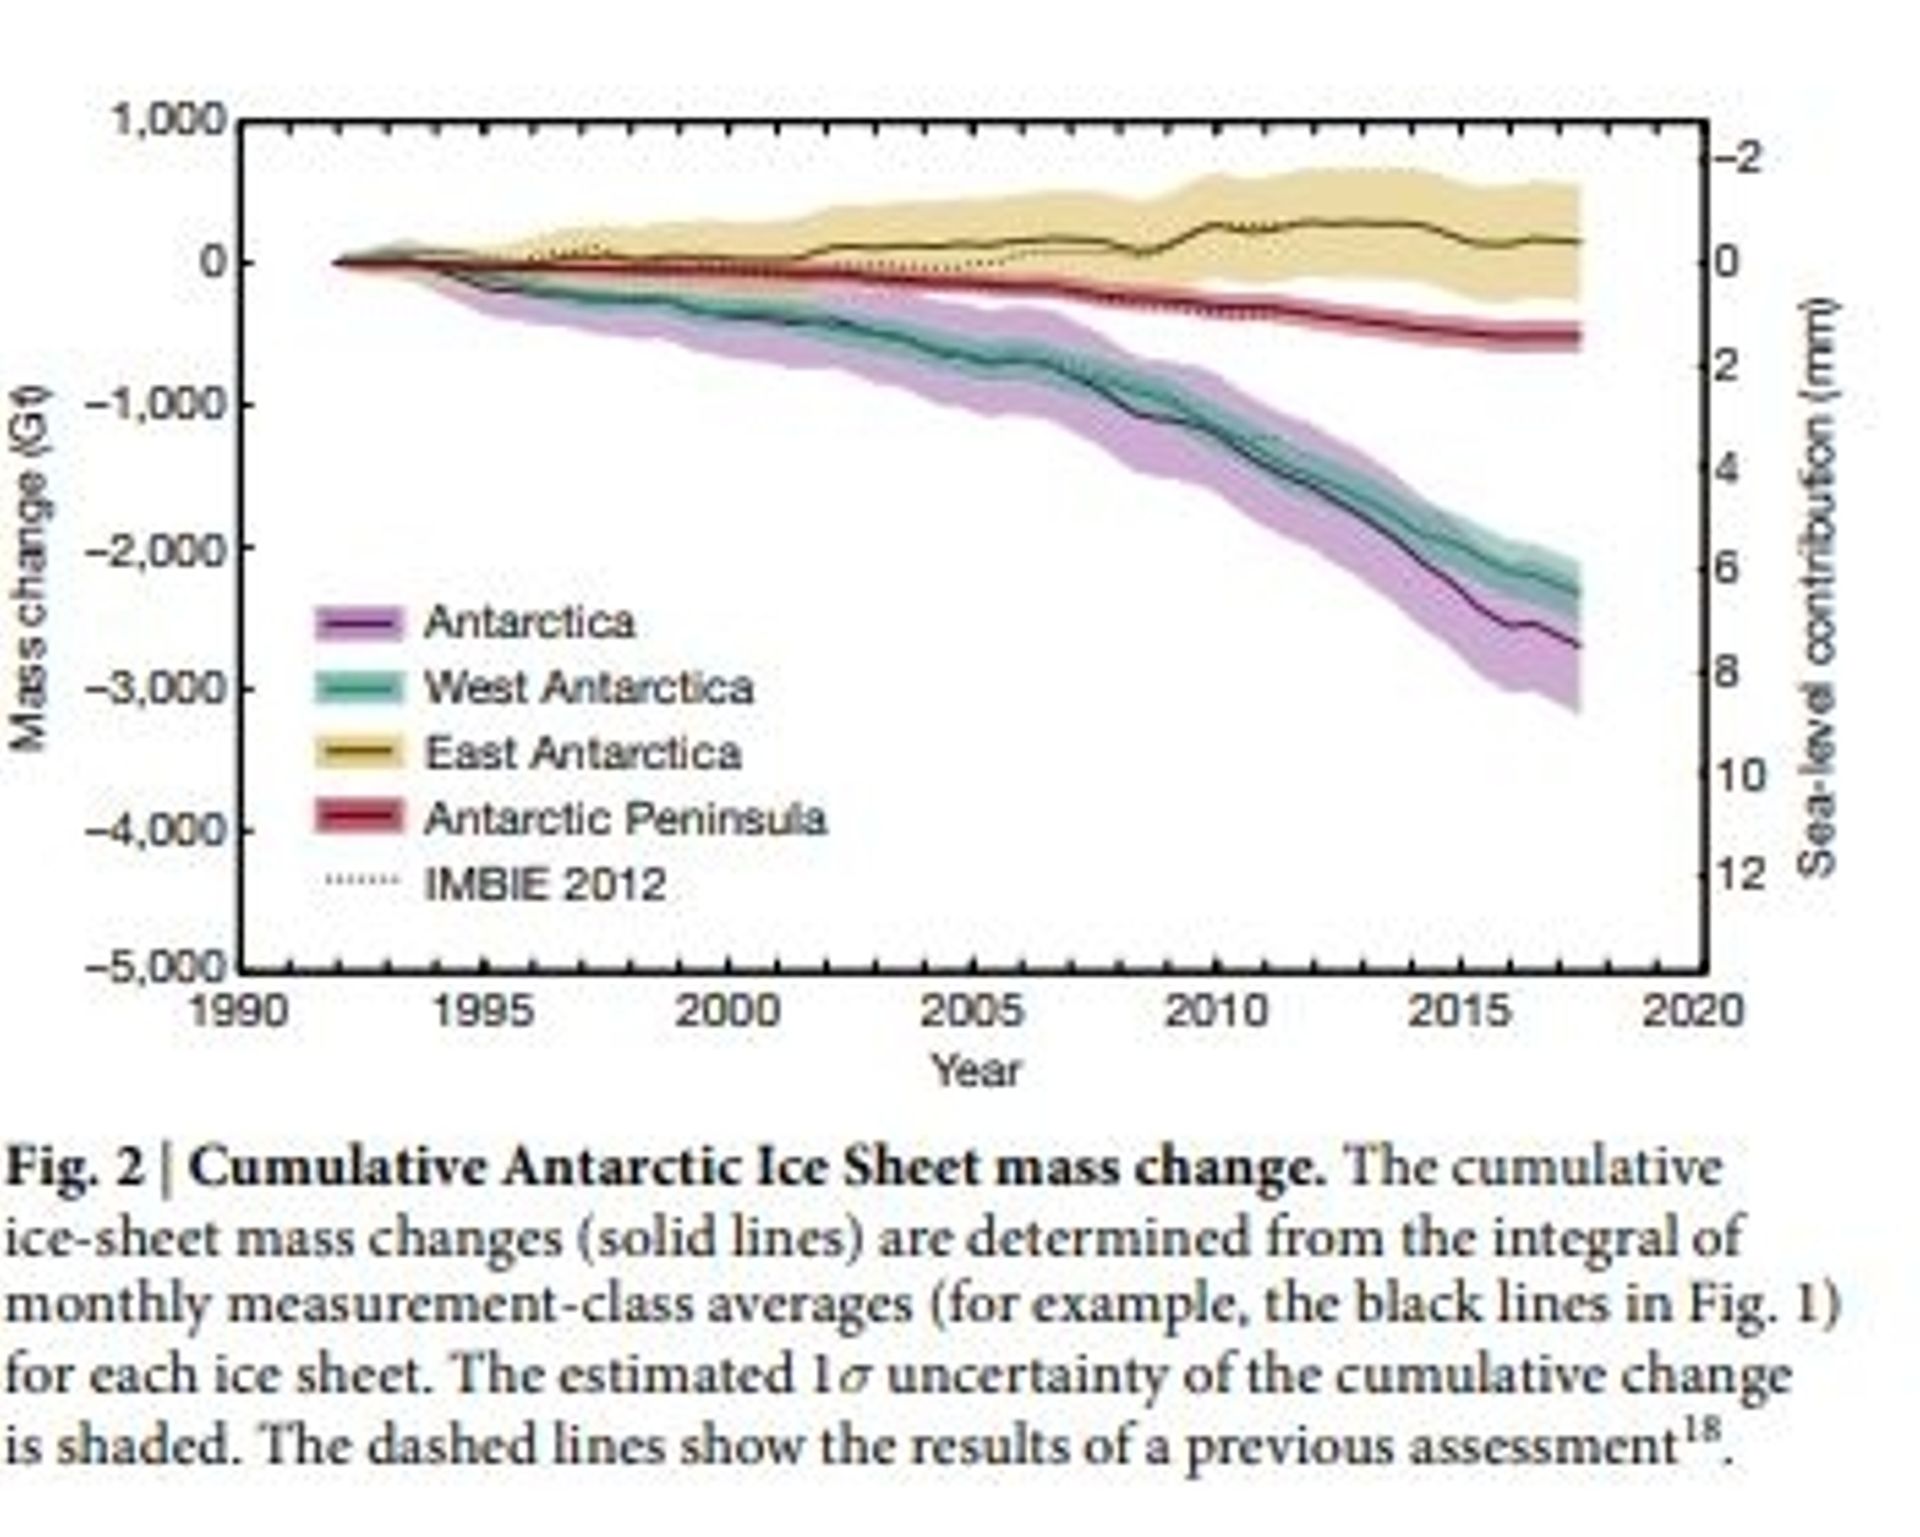 Reproduction de la figure 2 de l’étude "Mass balance of the Antarctic Ice Sheet from 1992 to 2017" publiée dans la revue Nature par l’équipe de recherches IMBIE.